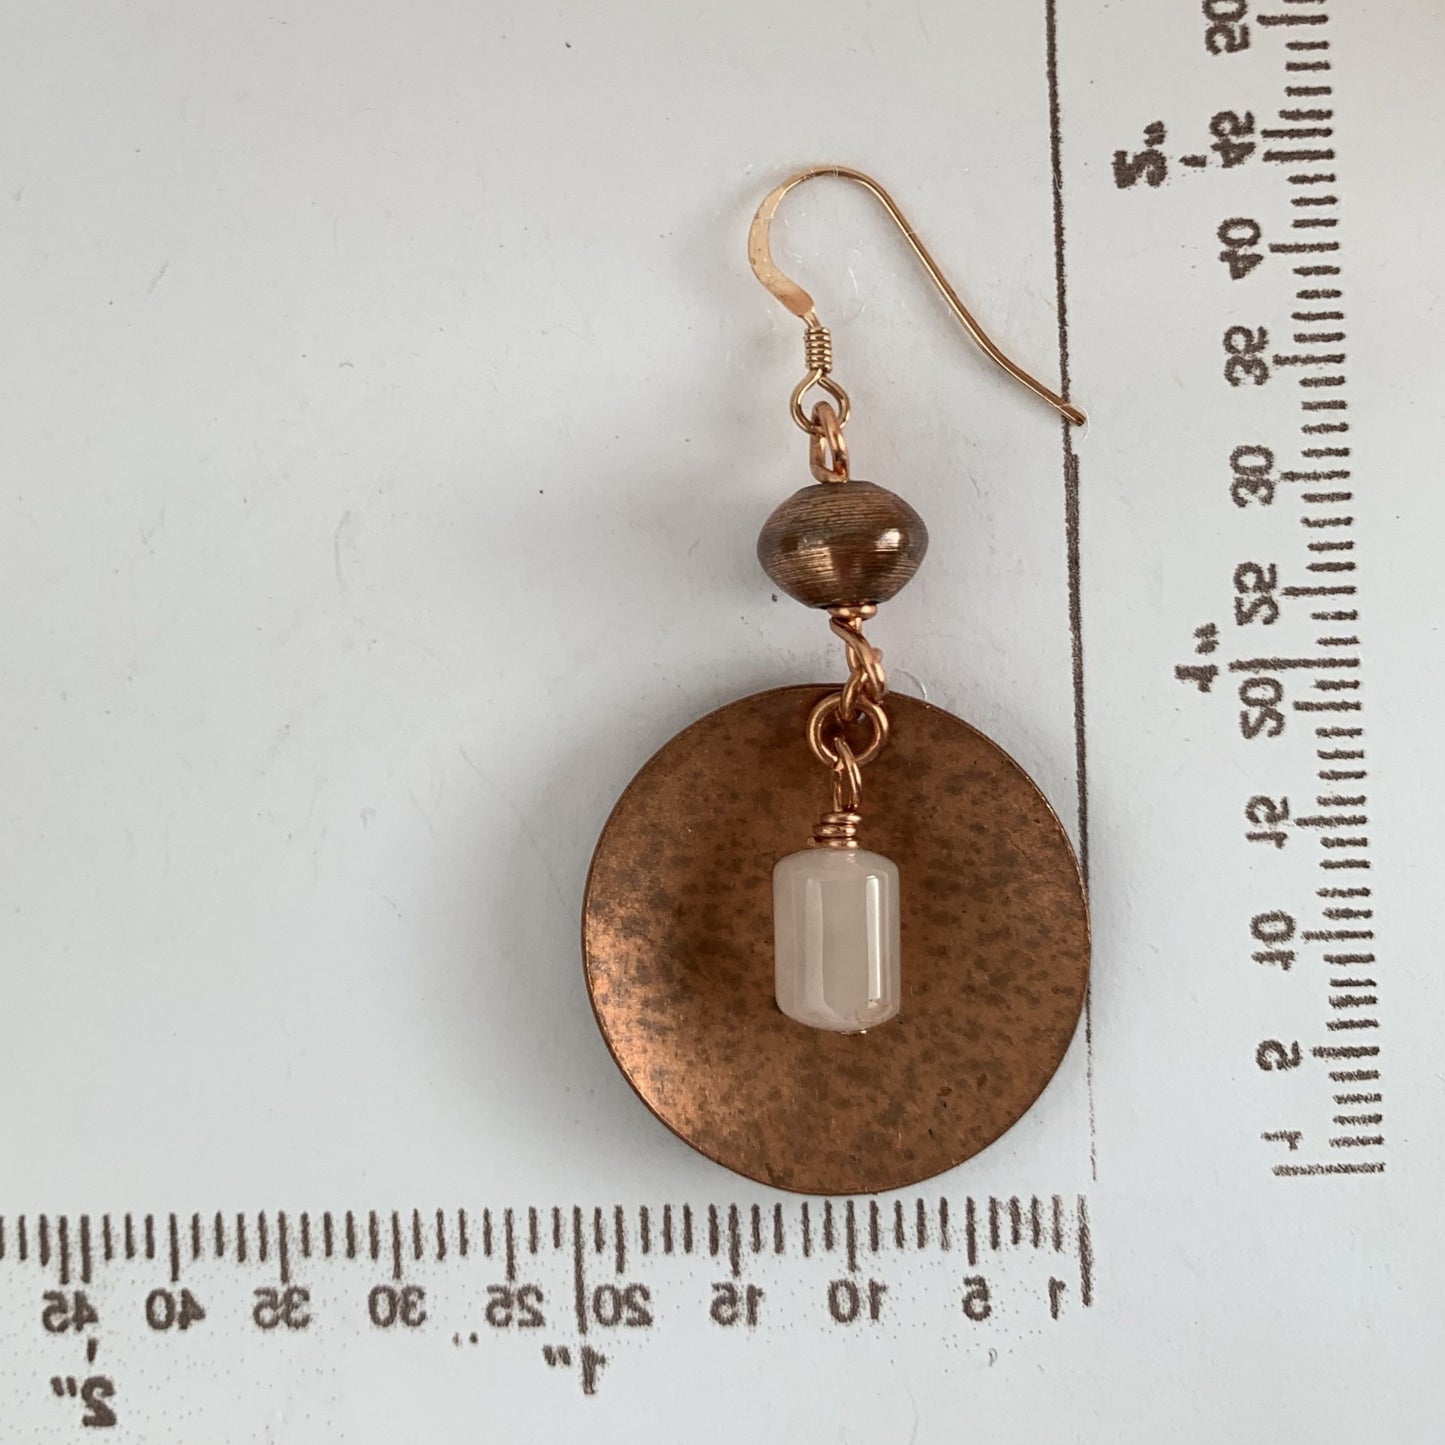 Rose Quartz on copper earrings